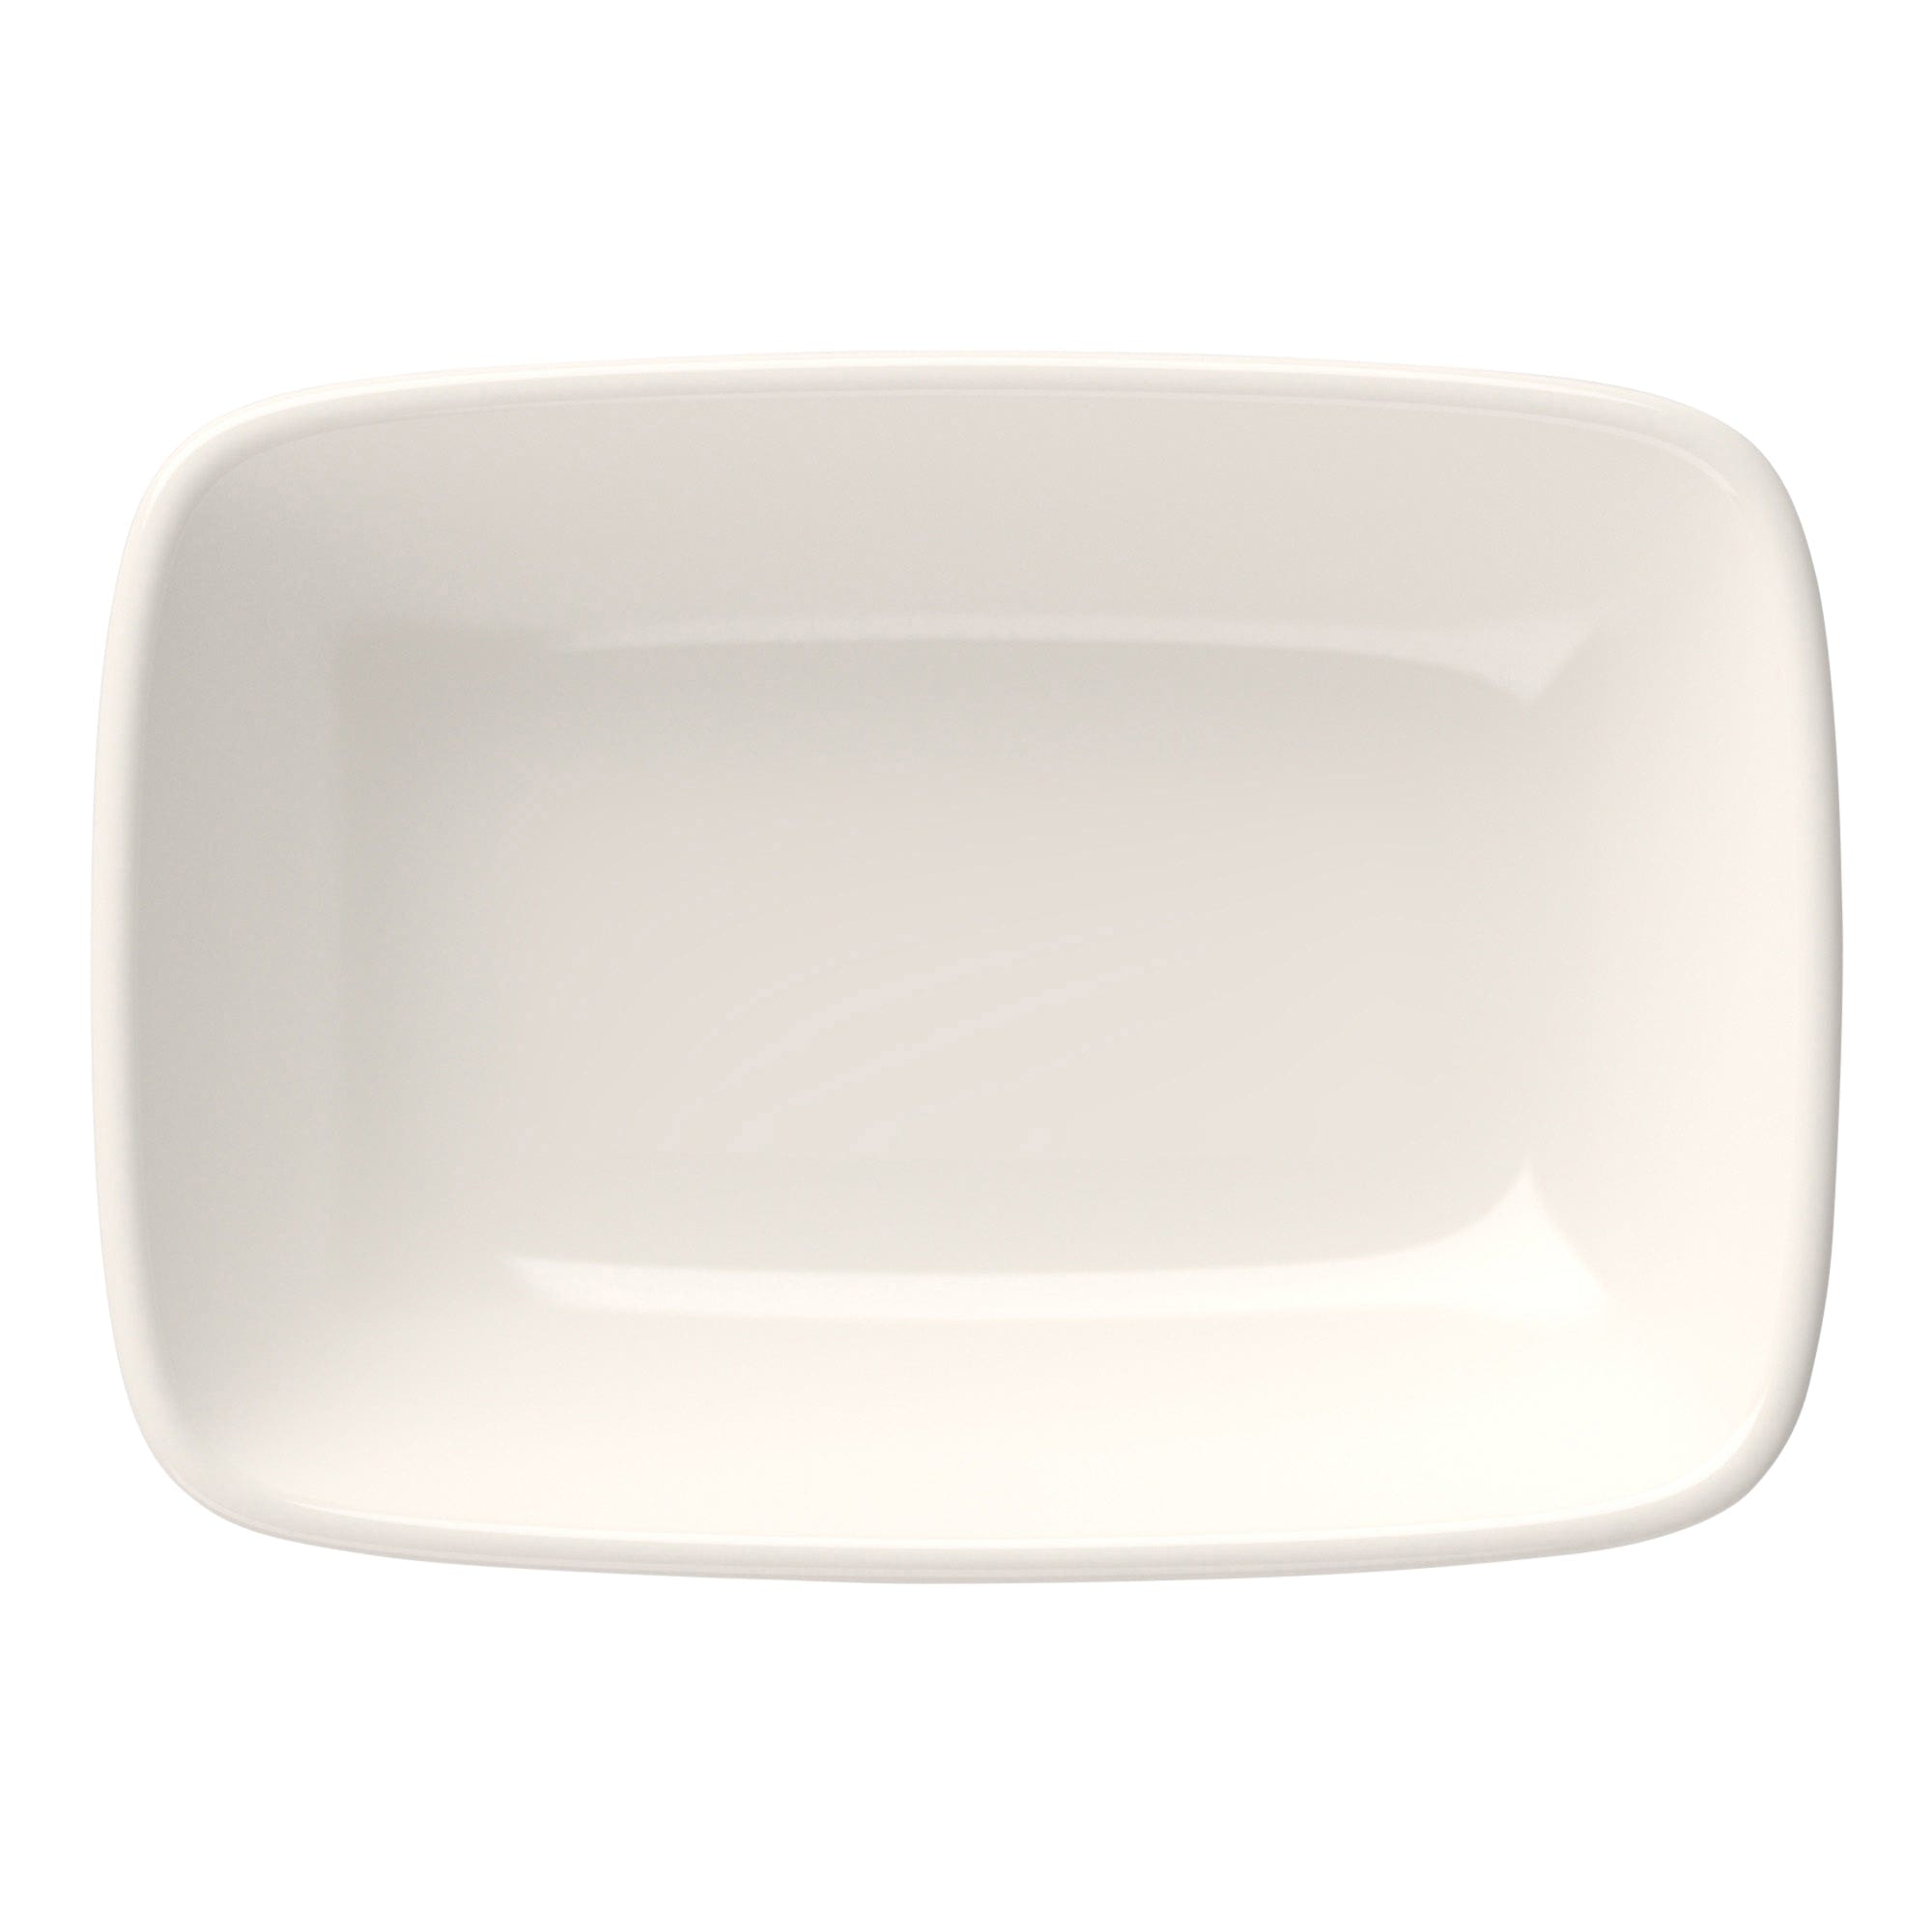 Quadro Porcelain Rectangular Platter 5.7"x4.0"